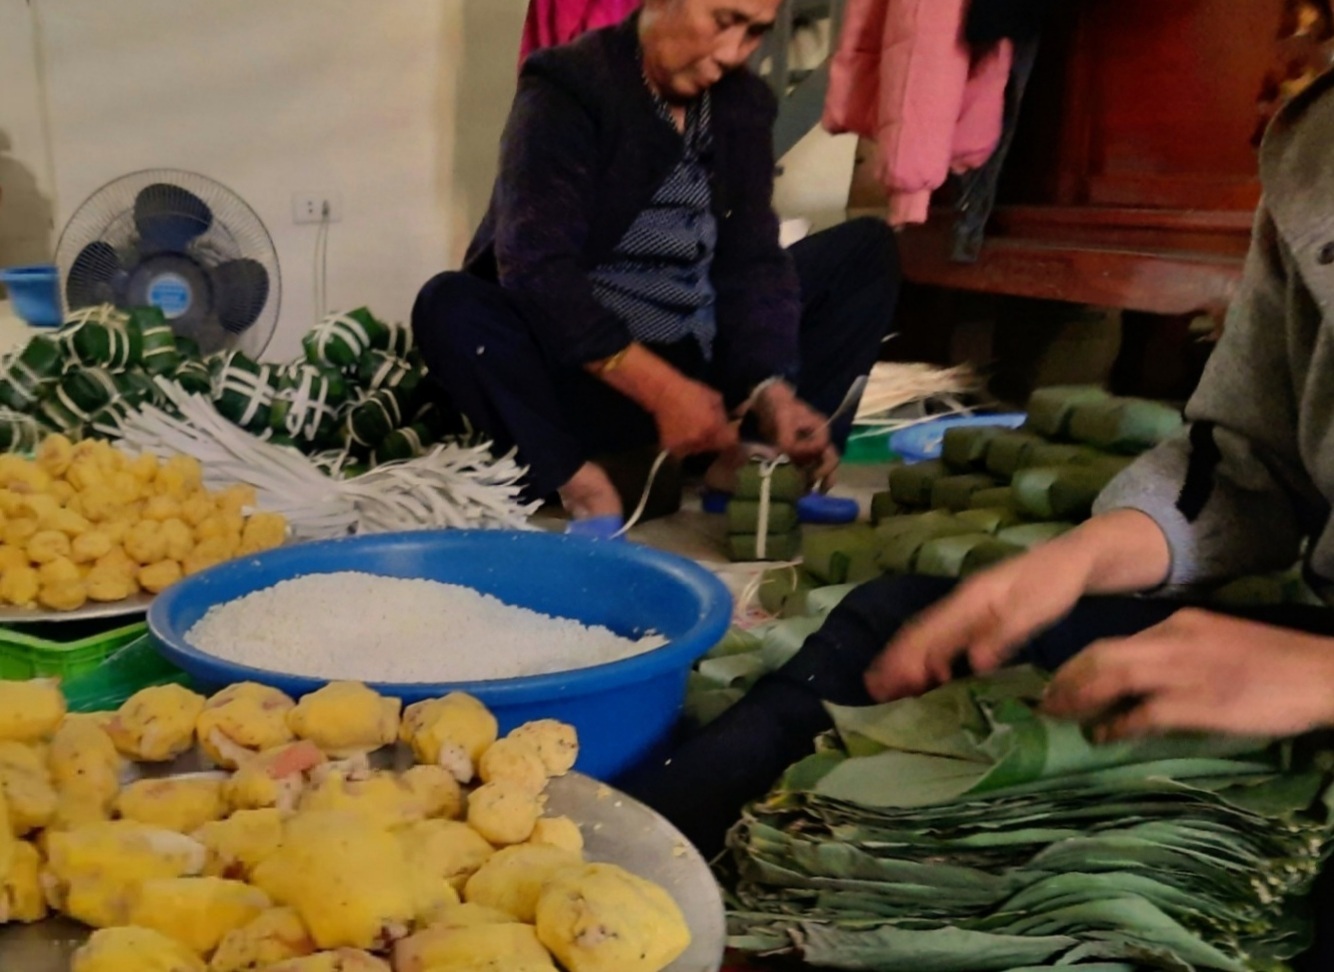 Hình ảnh chiếc bánh chưng xanh gắn liền với truyền thuyết thuở xa xưa vẫn luôn gợi nhắc lòng tri ân, thành kính nhớ đến cội nguồn, tổ tiên của mỗi người con đất Việt, đặc biệt vào dịp Tết đến xuân về. 